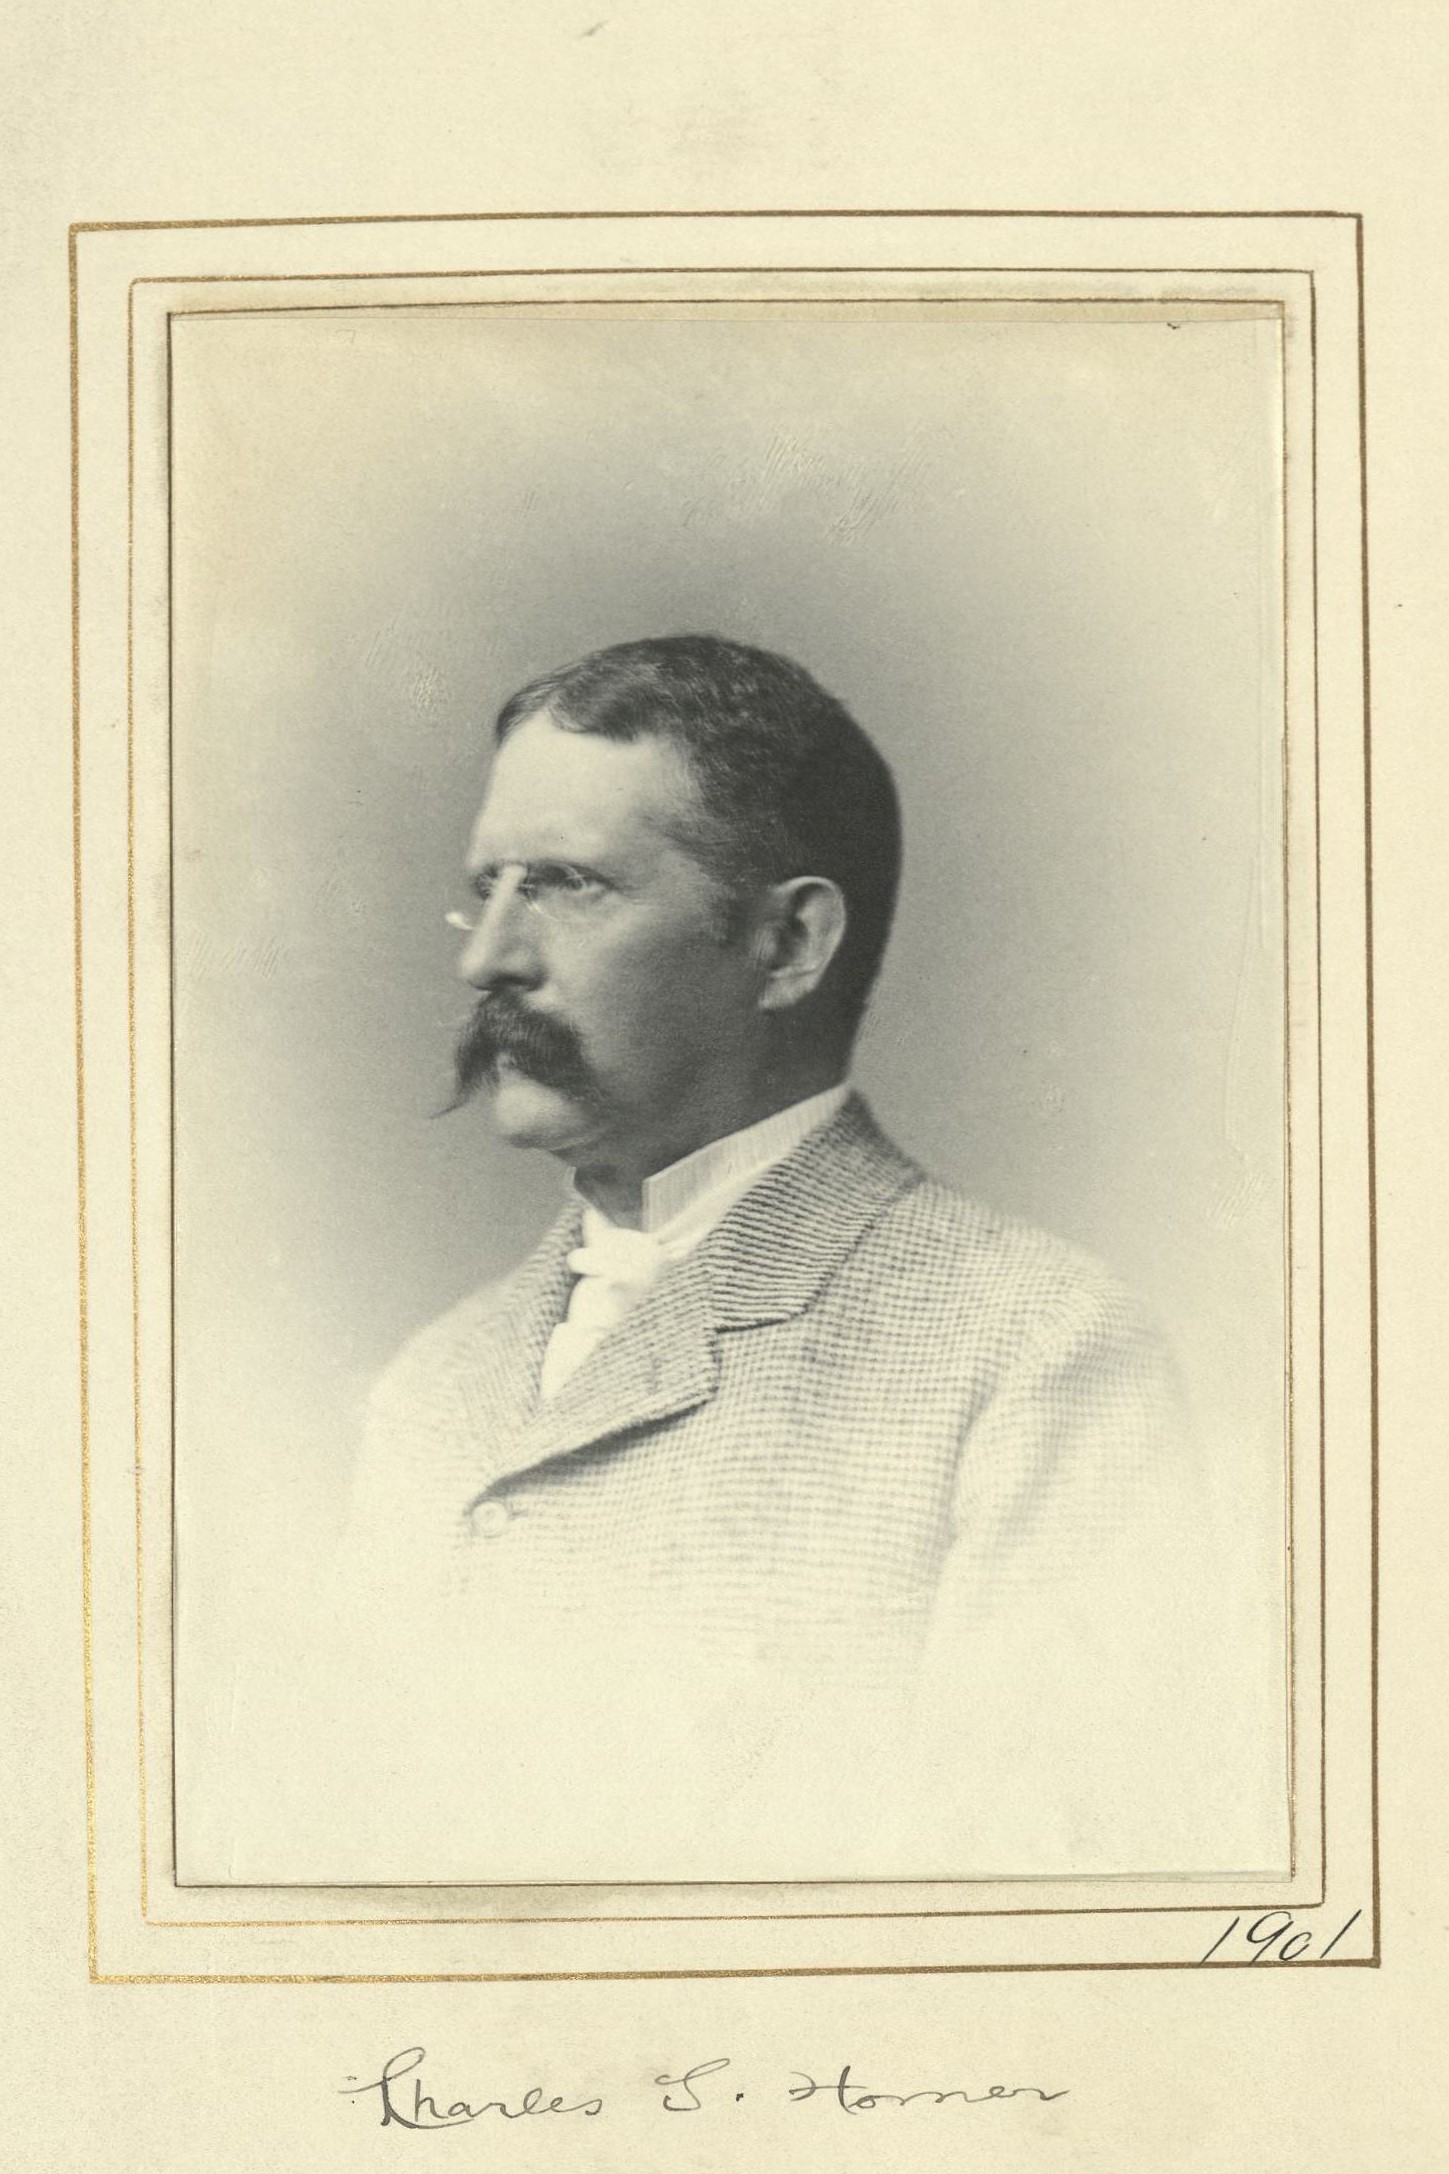 Member portrait of Charles S. Homer